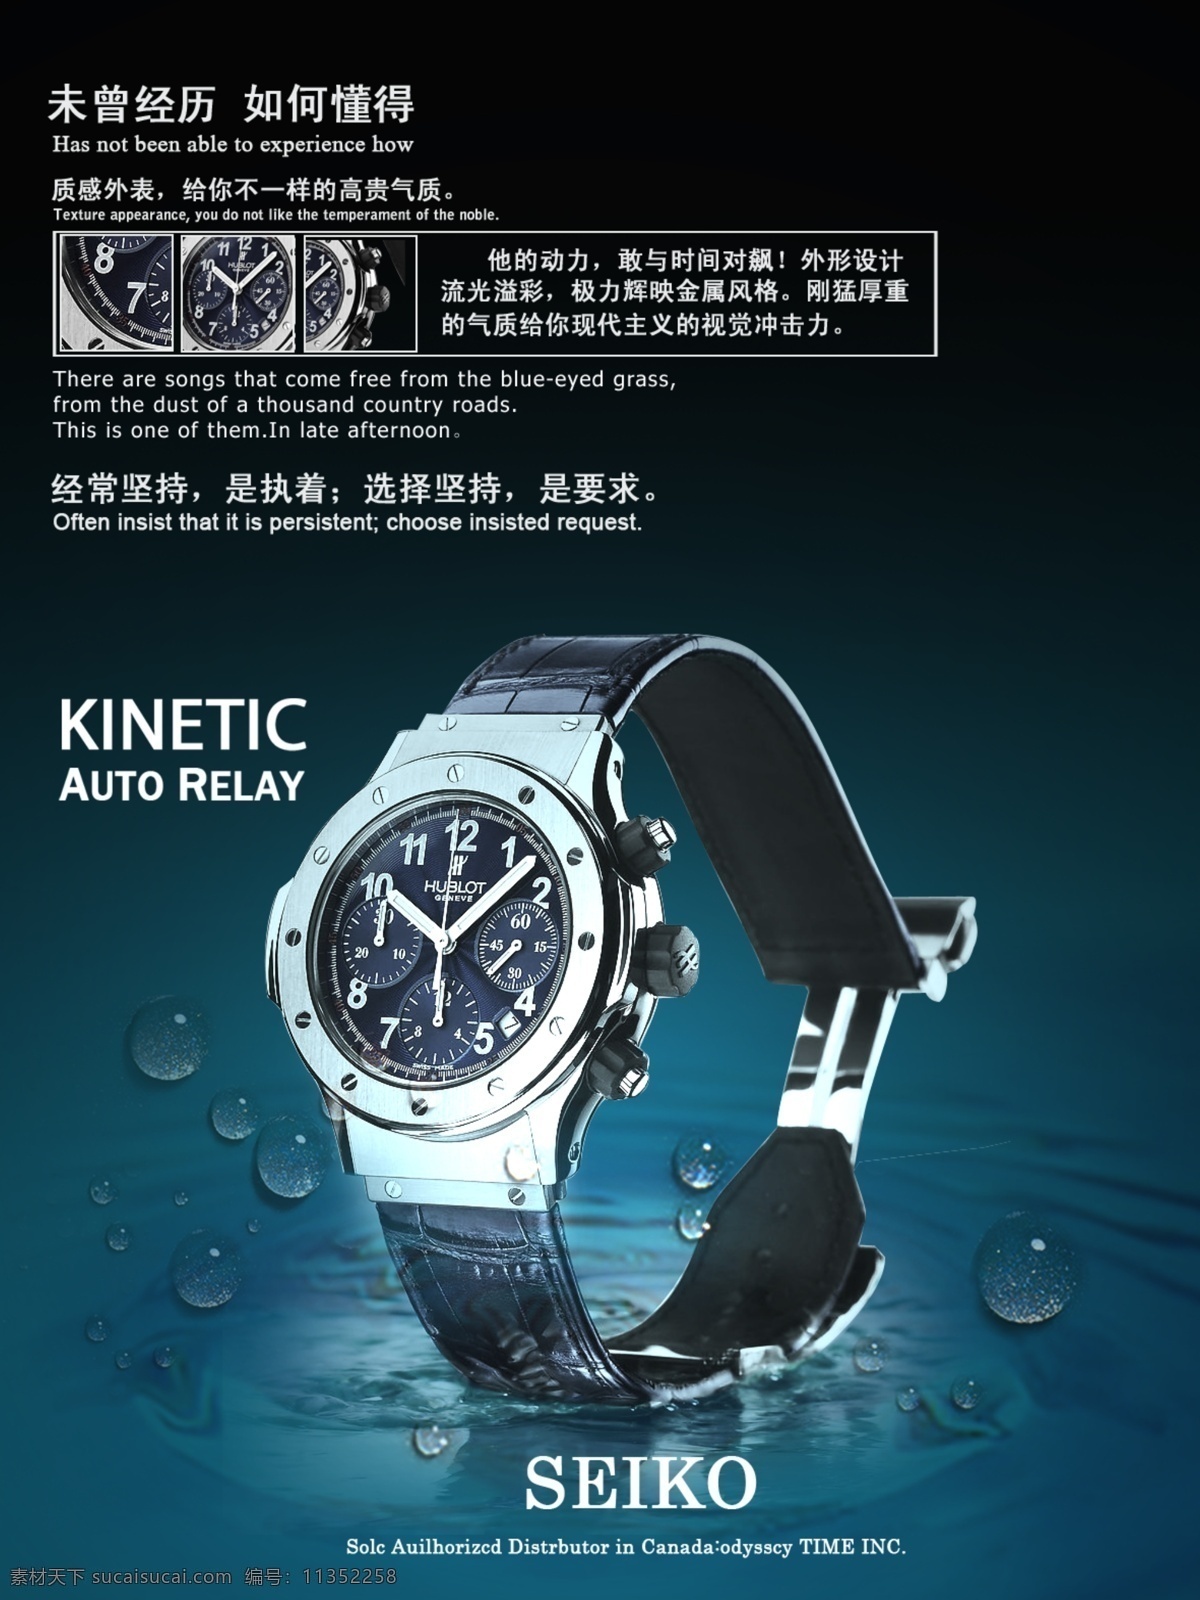 手表海报 模版下载 蓝色底图 手表 手表宣传单 传单素材 手表素材 淘宝素材 手表介绍 蓝色渐变